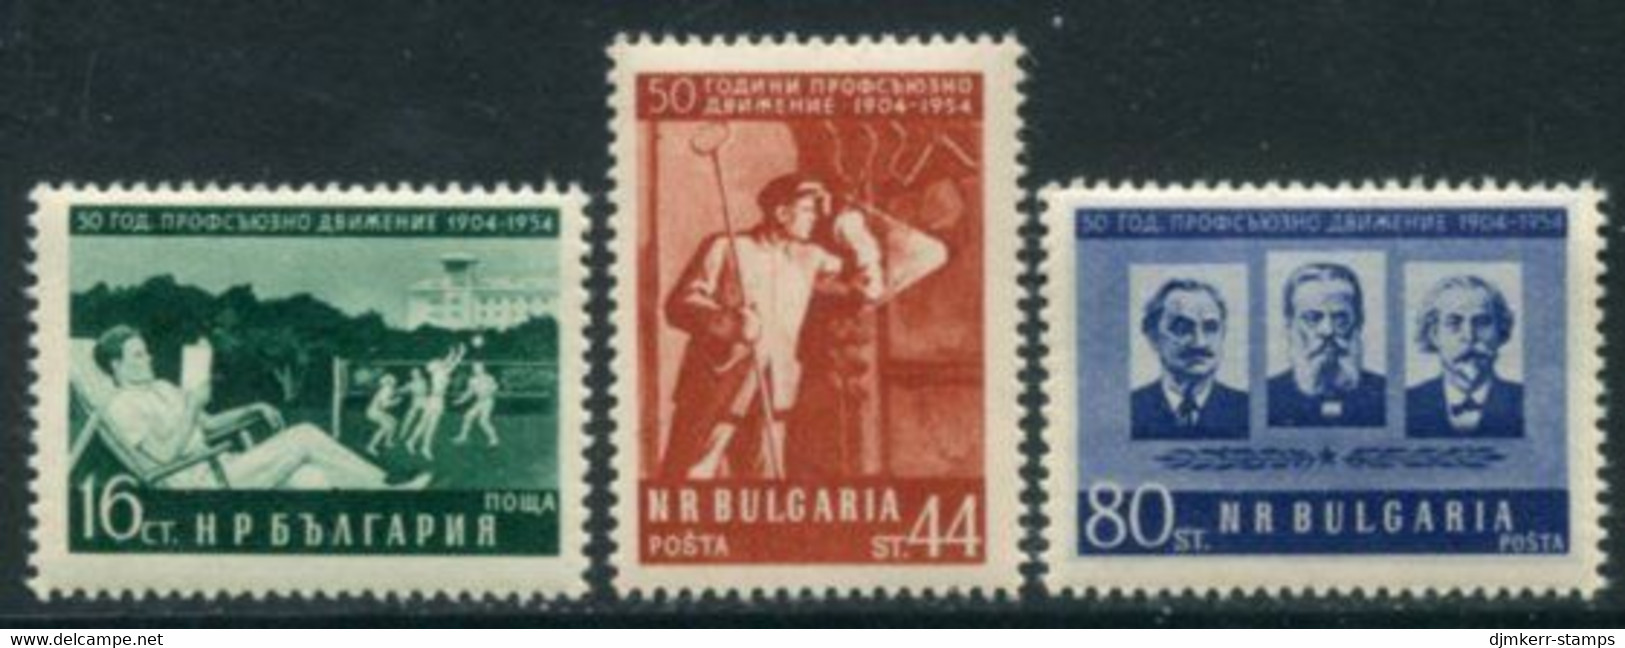 BULGARIA 1954 Trades Unions Anniversary MNH / ** .  Michel 932-34 - Ongebruikt